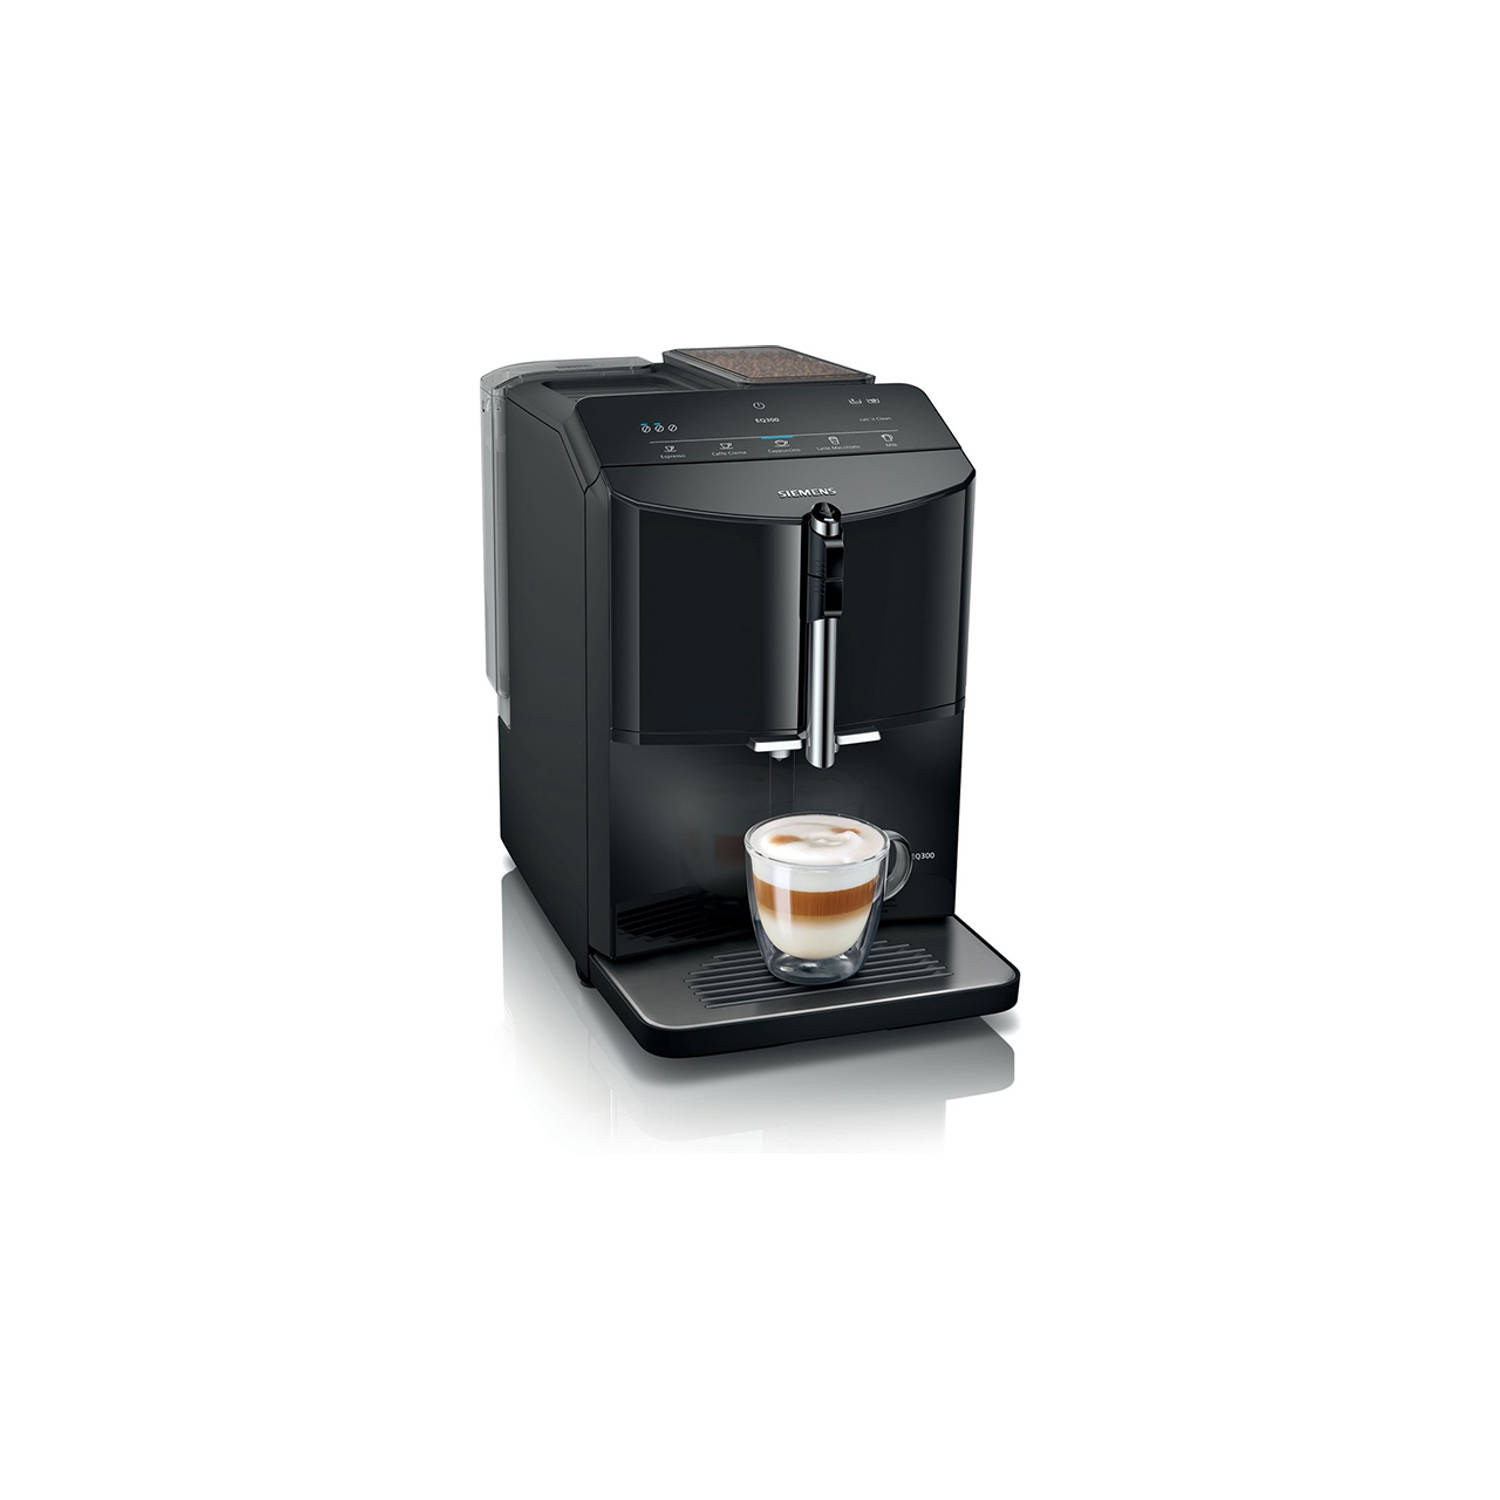 Siemens espresso volautomaat EQ300 TF301E09 (Piano Black)